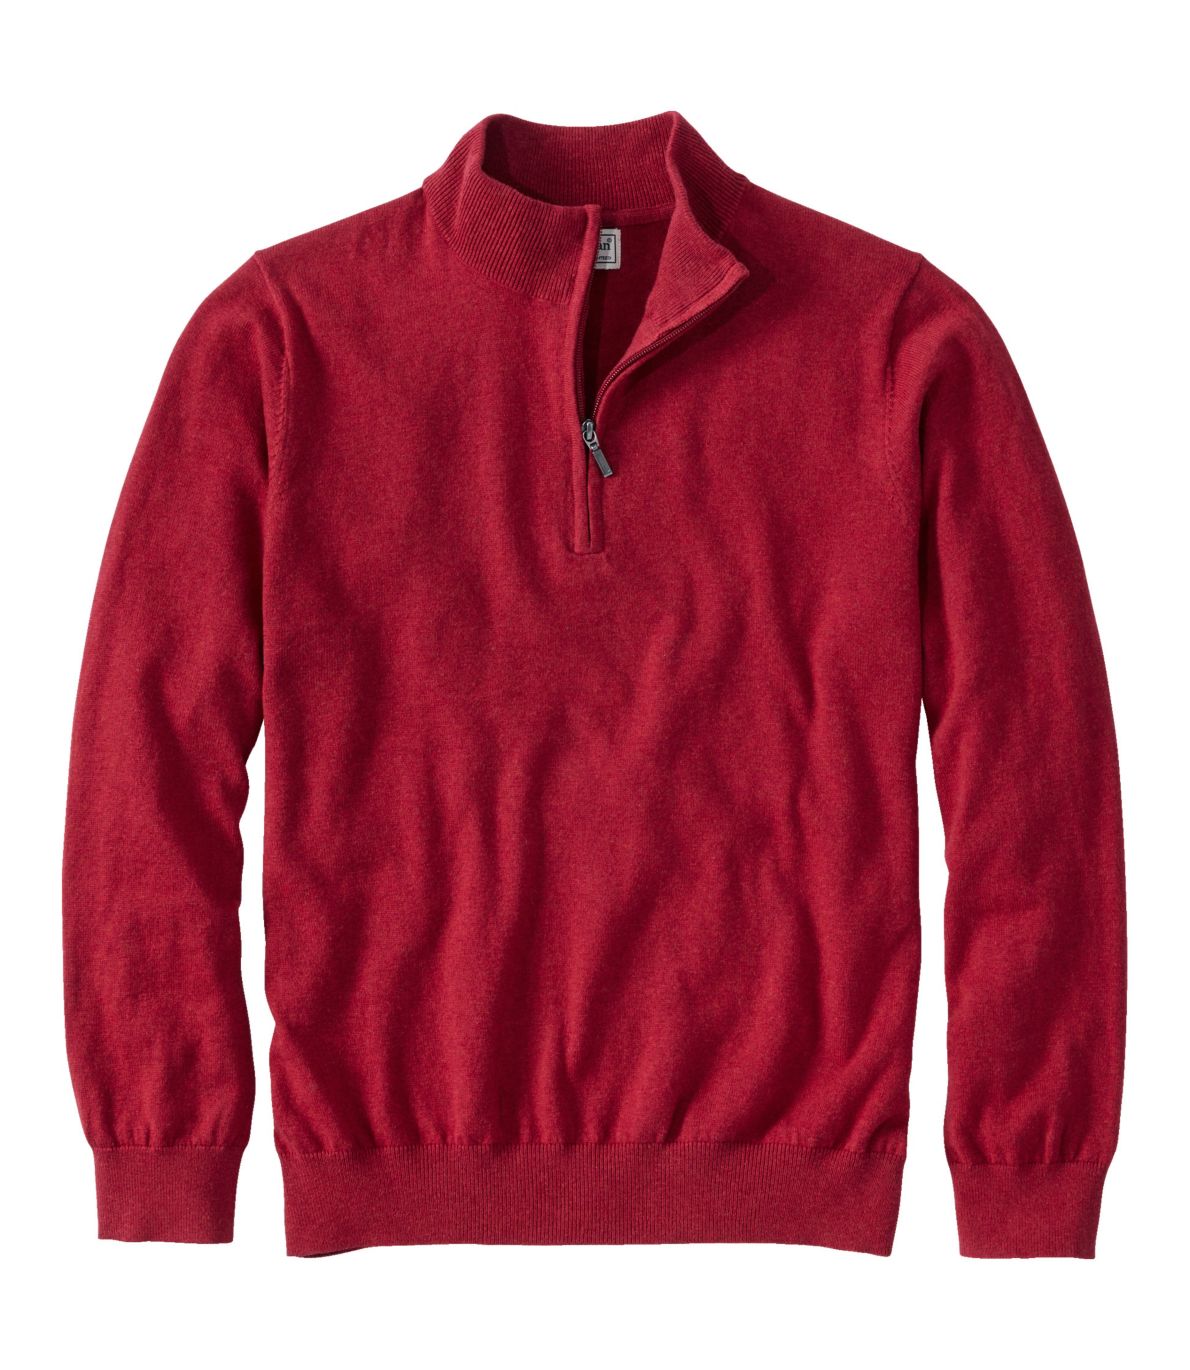 Men's Cotton/Cashmere Sweater, Quarter-Zip